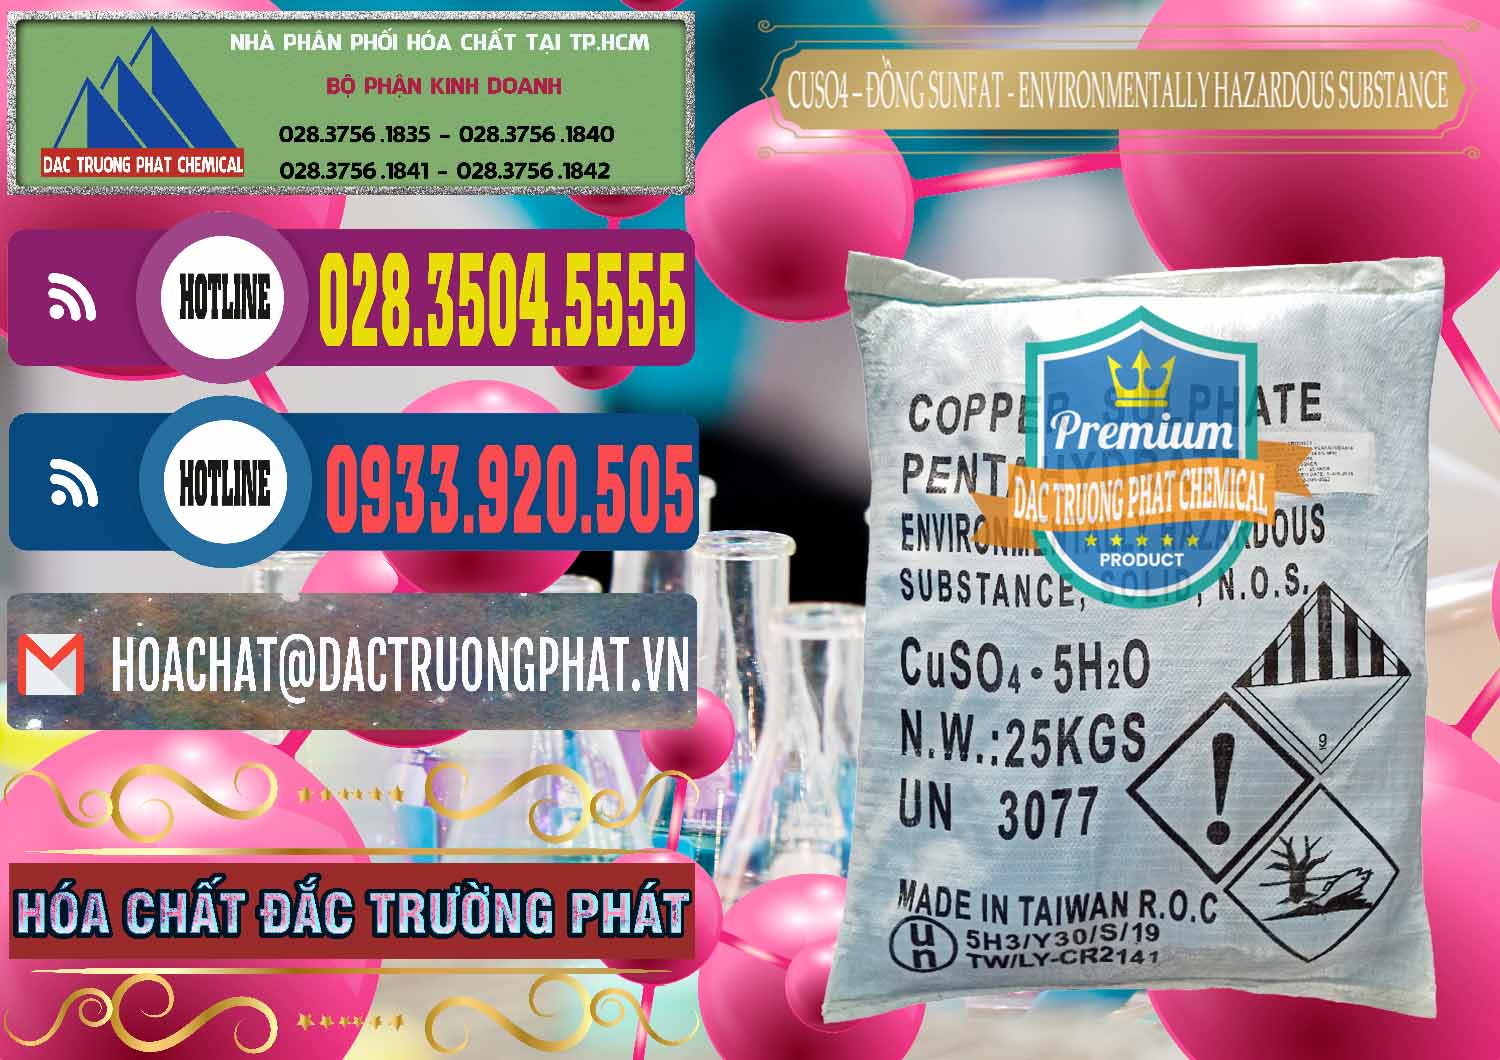 Nơi chuyên cung cấp và bán CuSO4 – Đồng Sunfat Đài Loan Taiwan - 0059 - Công ty chuyên phân phối & bán hóa chất tại TP.HCM - muabanhoachat.com.vn